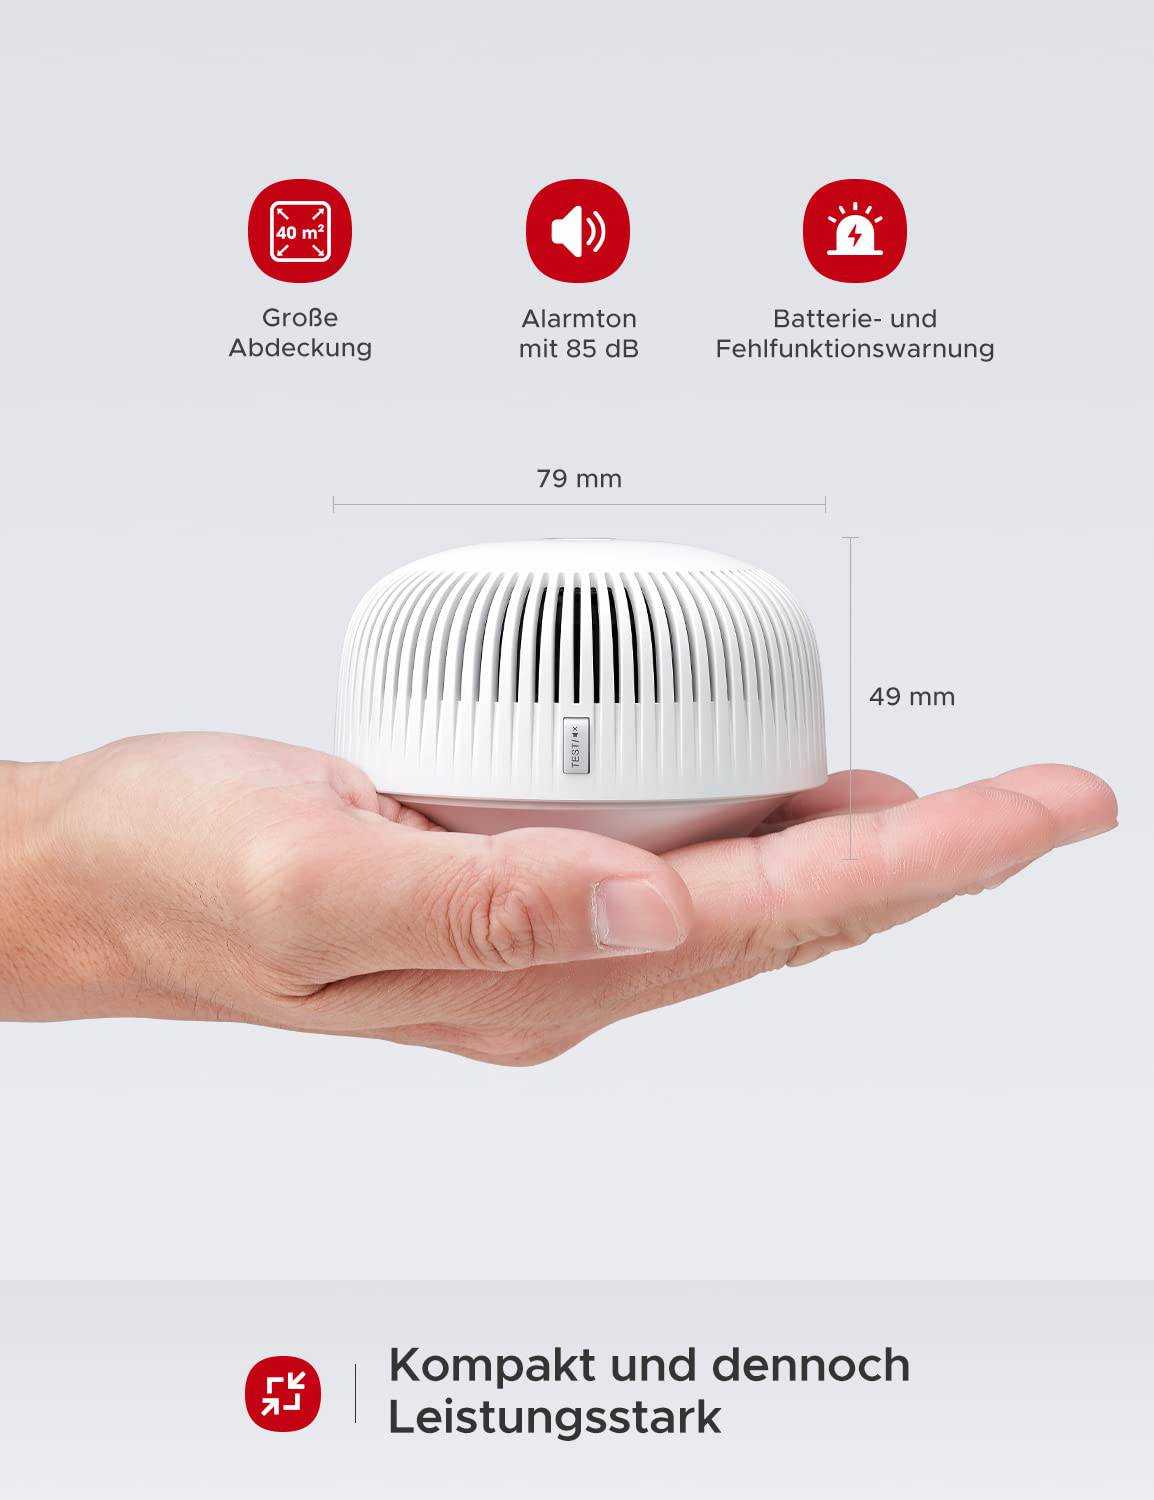 X-Sense XS03-WX WiFi-Rauchmelder - Verbundene Sicherheit für Ihr Zuhause Mesch Shop